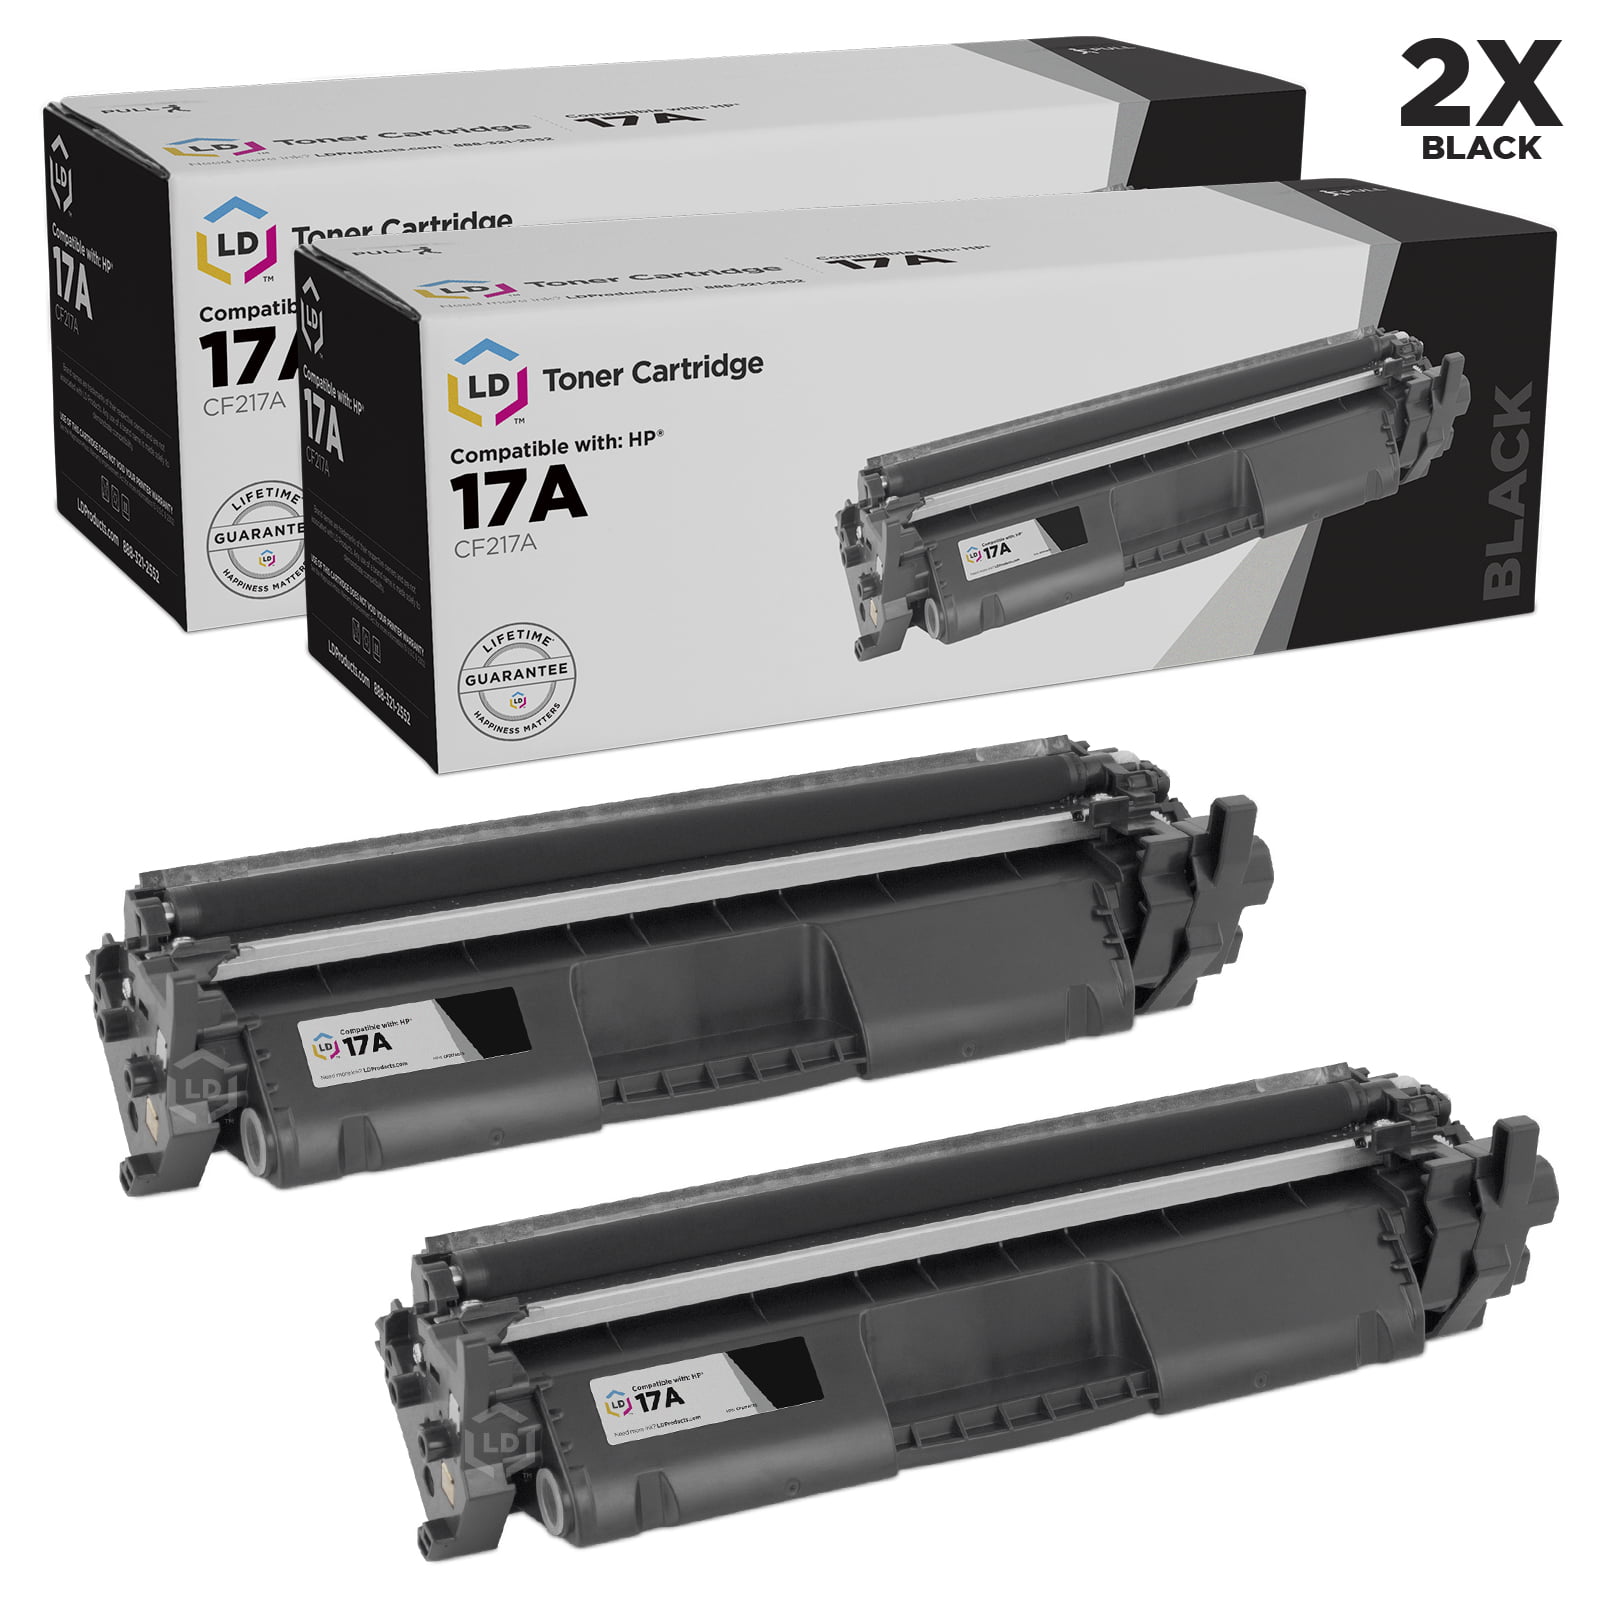 for HP 17A M130fn CF217A M130fw LaserJet Pro M102 M130nw Printers Toner Refill New Era Toner No Chip